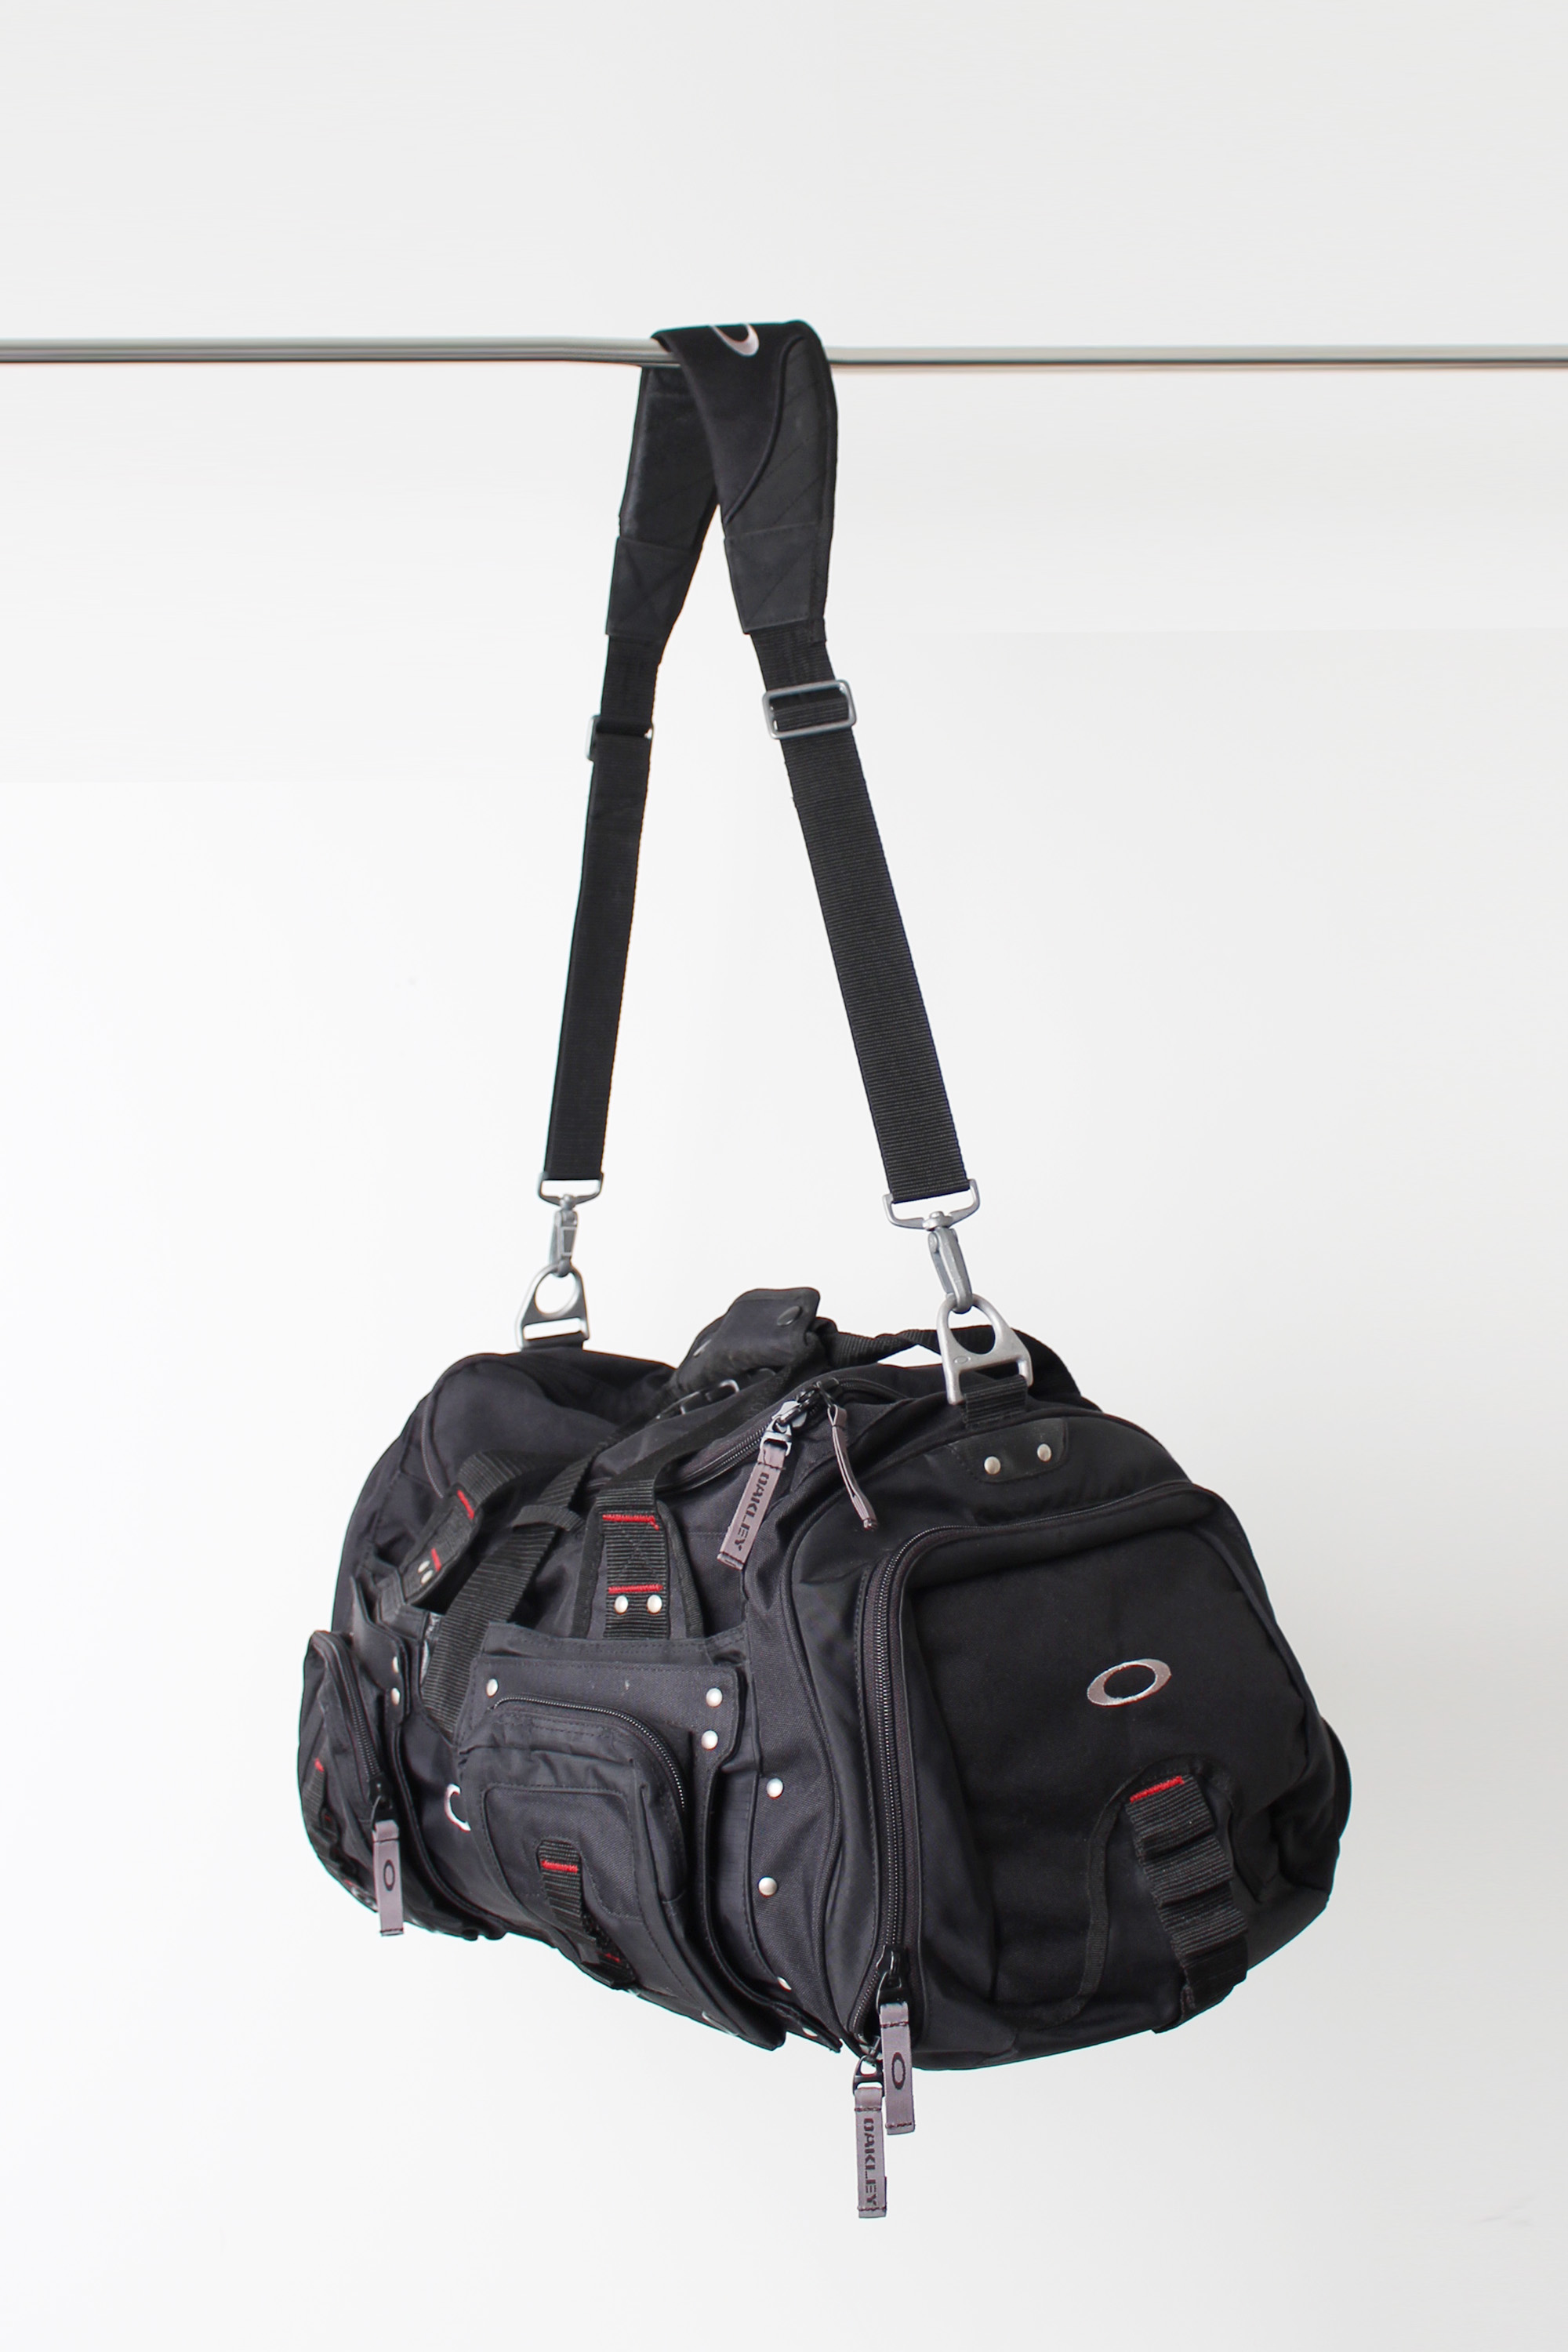 Oakley Tactical Travel Bag